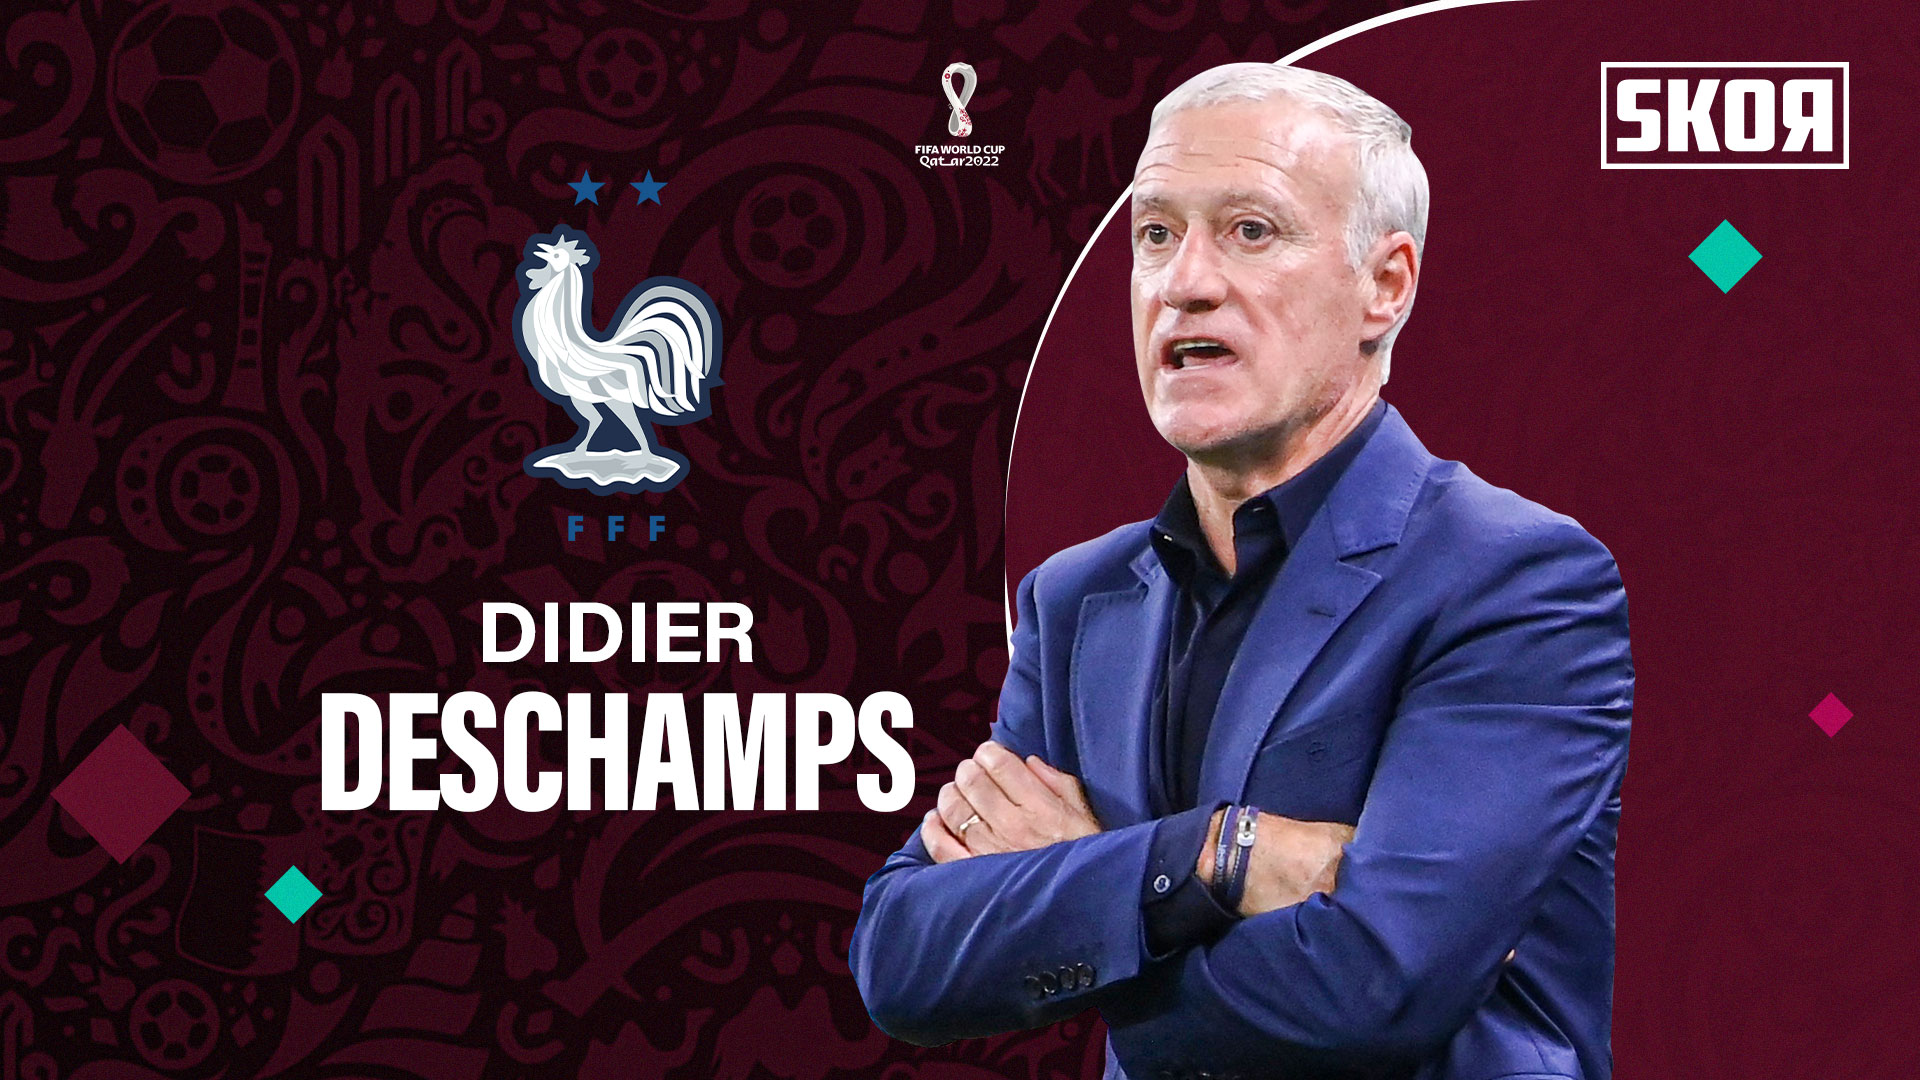 Didier Deschamps Tambah Masa Baktinya di Timnas Prancis hingga 2026